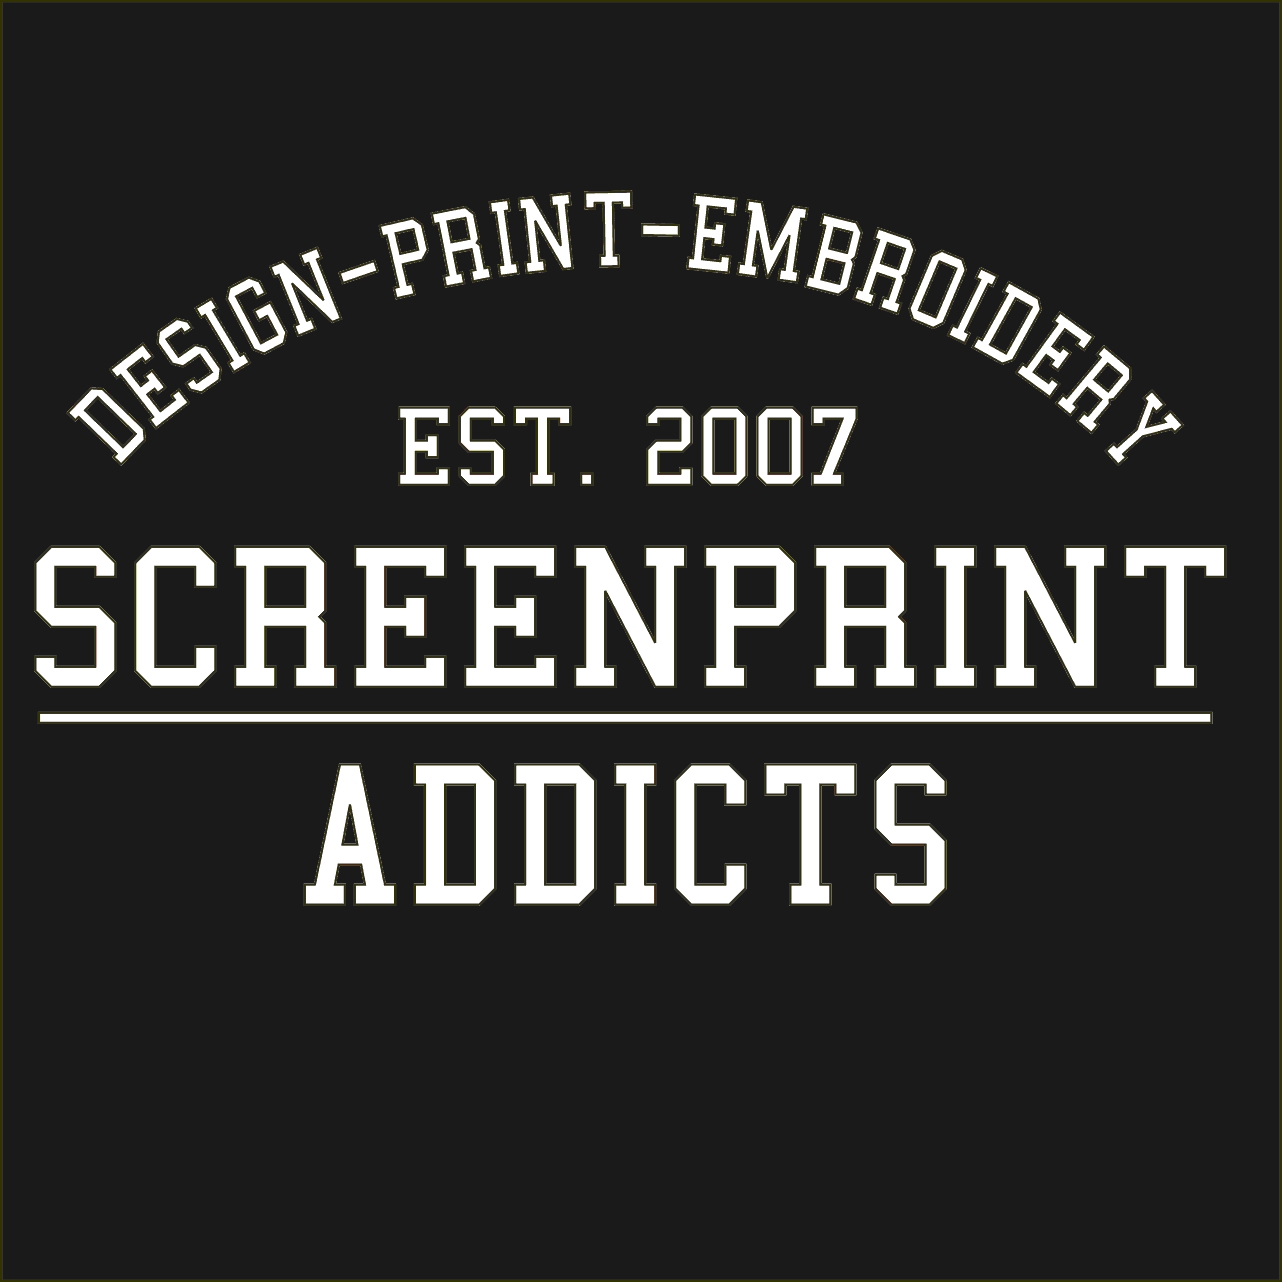 Screenprint Addicts